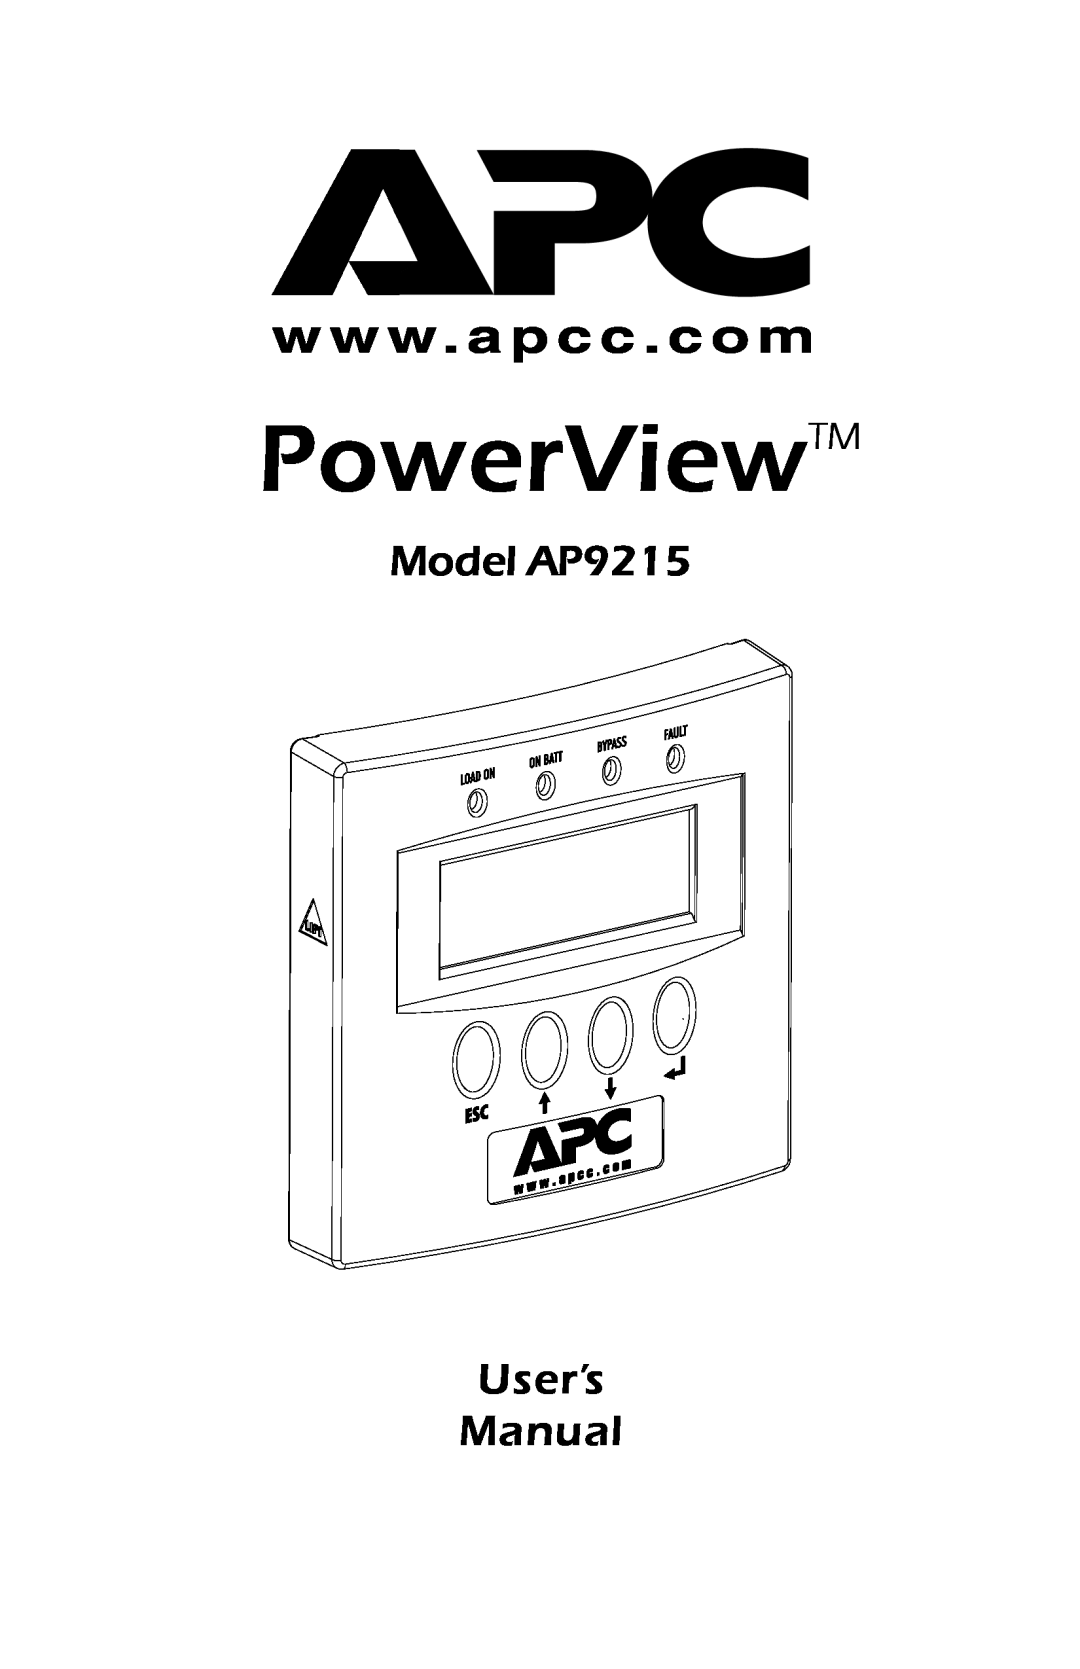 American Power Conversion user manual PowerView, Model AP9215 User’s Manual 